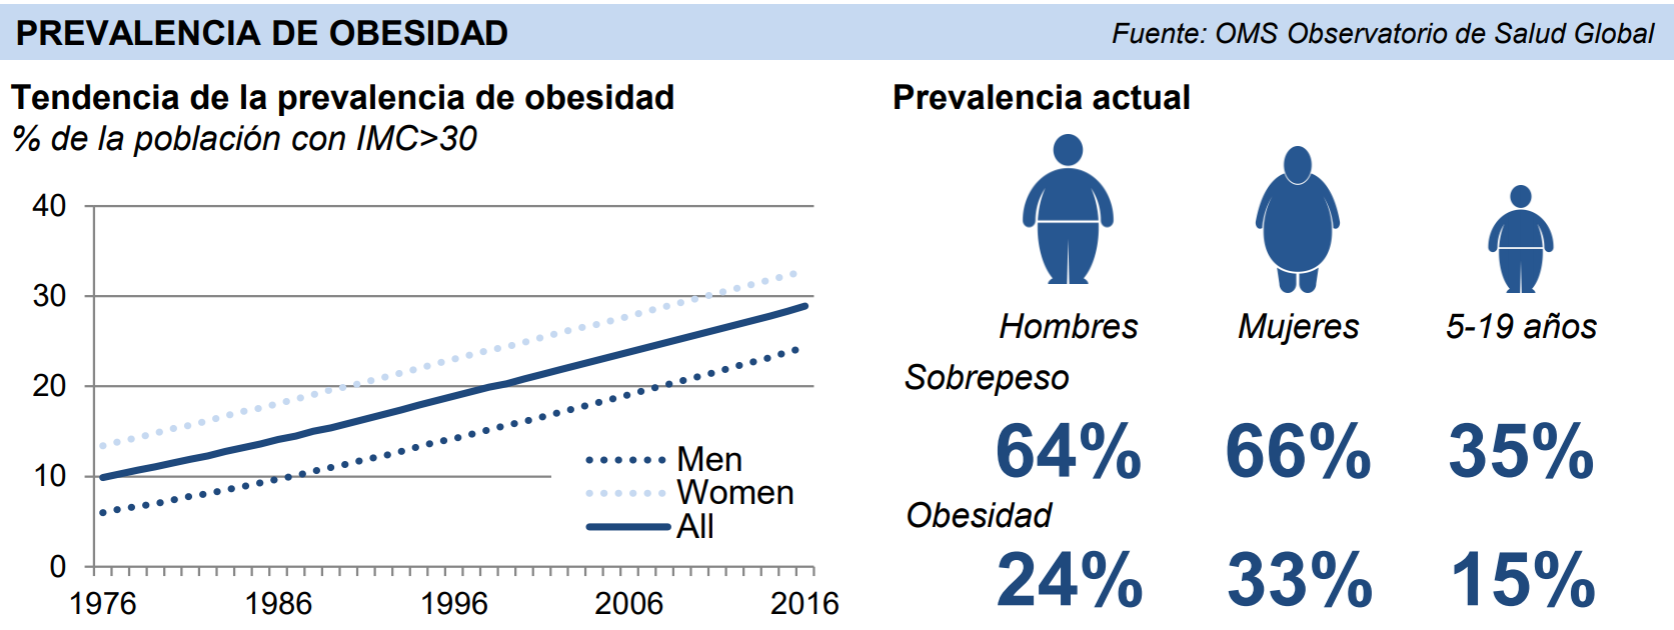 Hacer frente a la obesidad aumentaría el bienestar económico y social de México